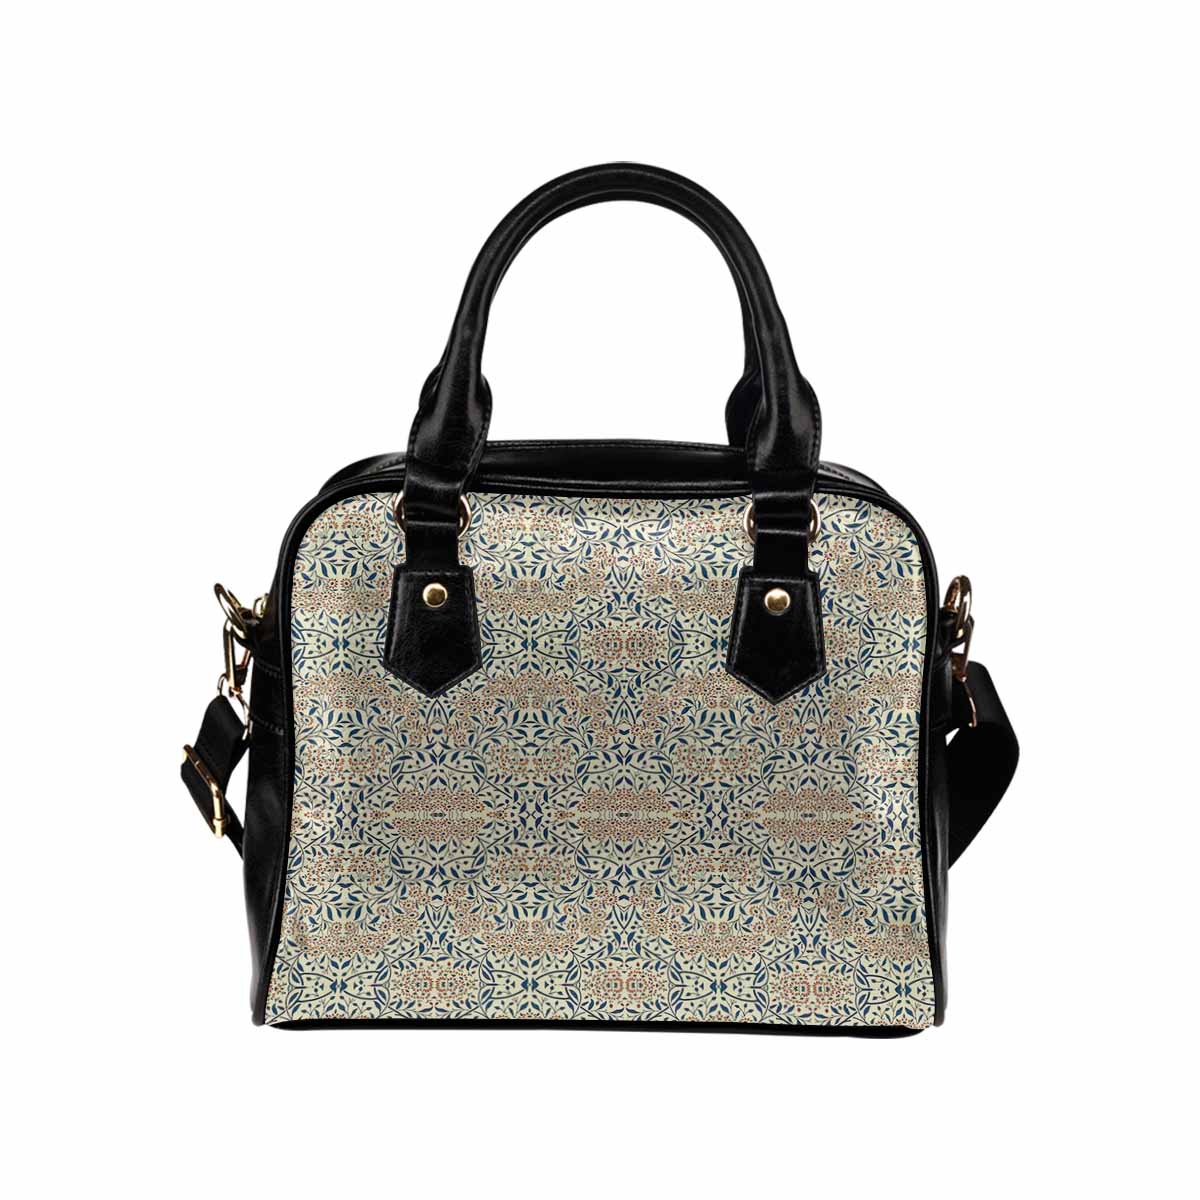 Antique general print handbag, MODEL1695341,Design 02